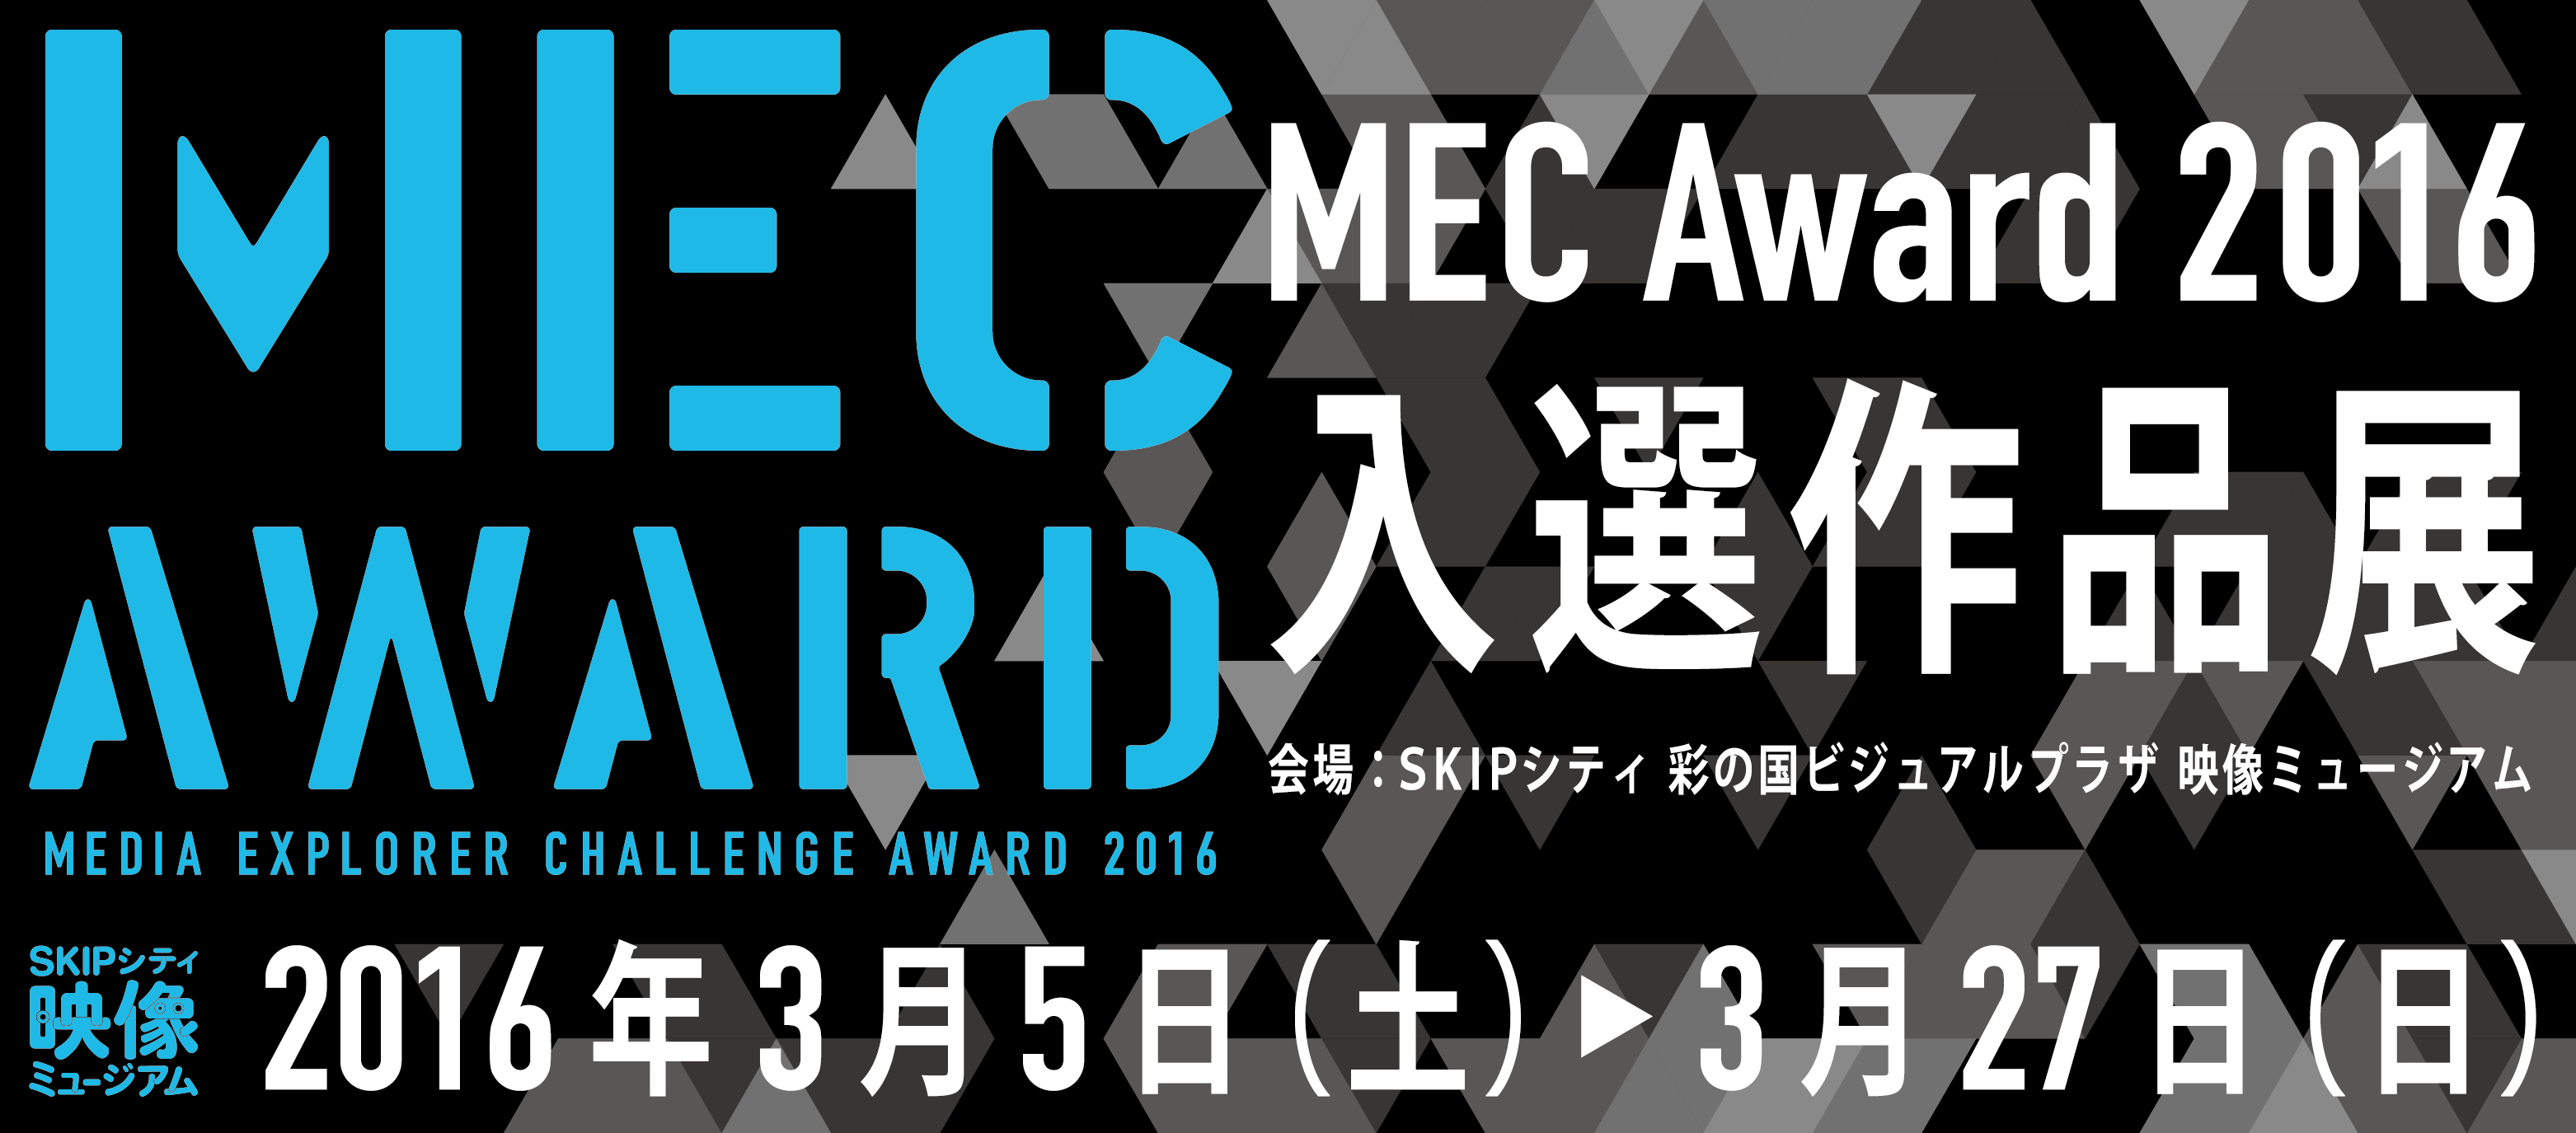 「MEC Award 2016（Media Explorer Challenge Award 2016）」